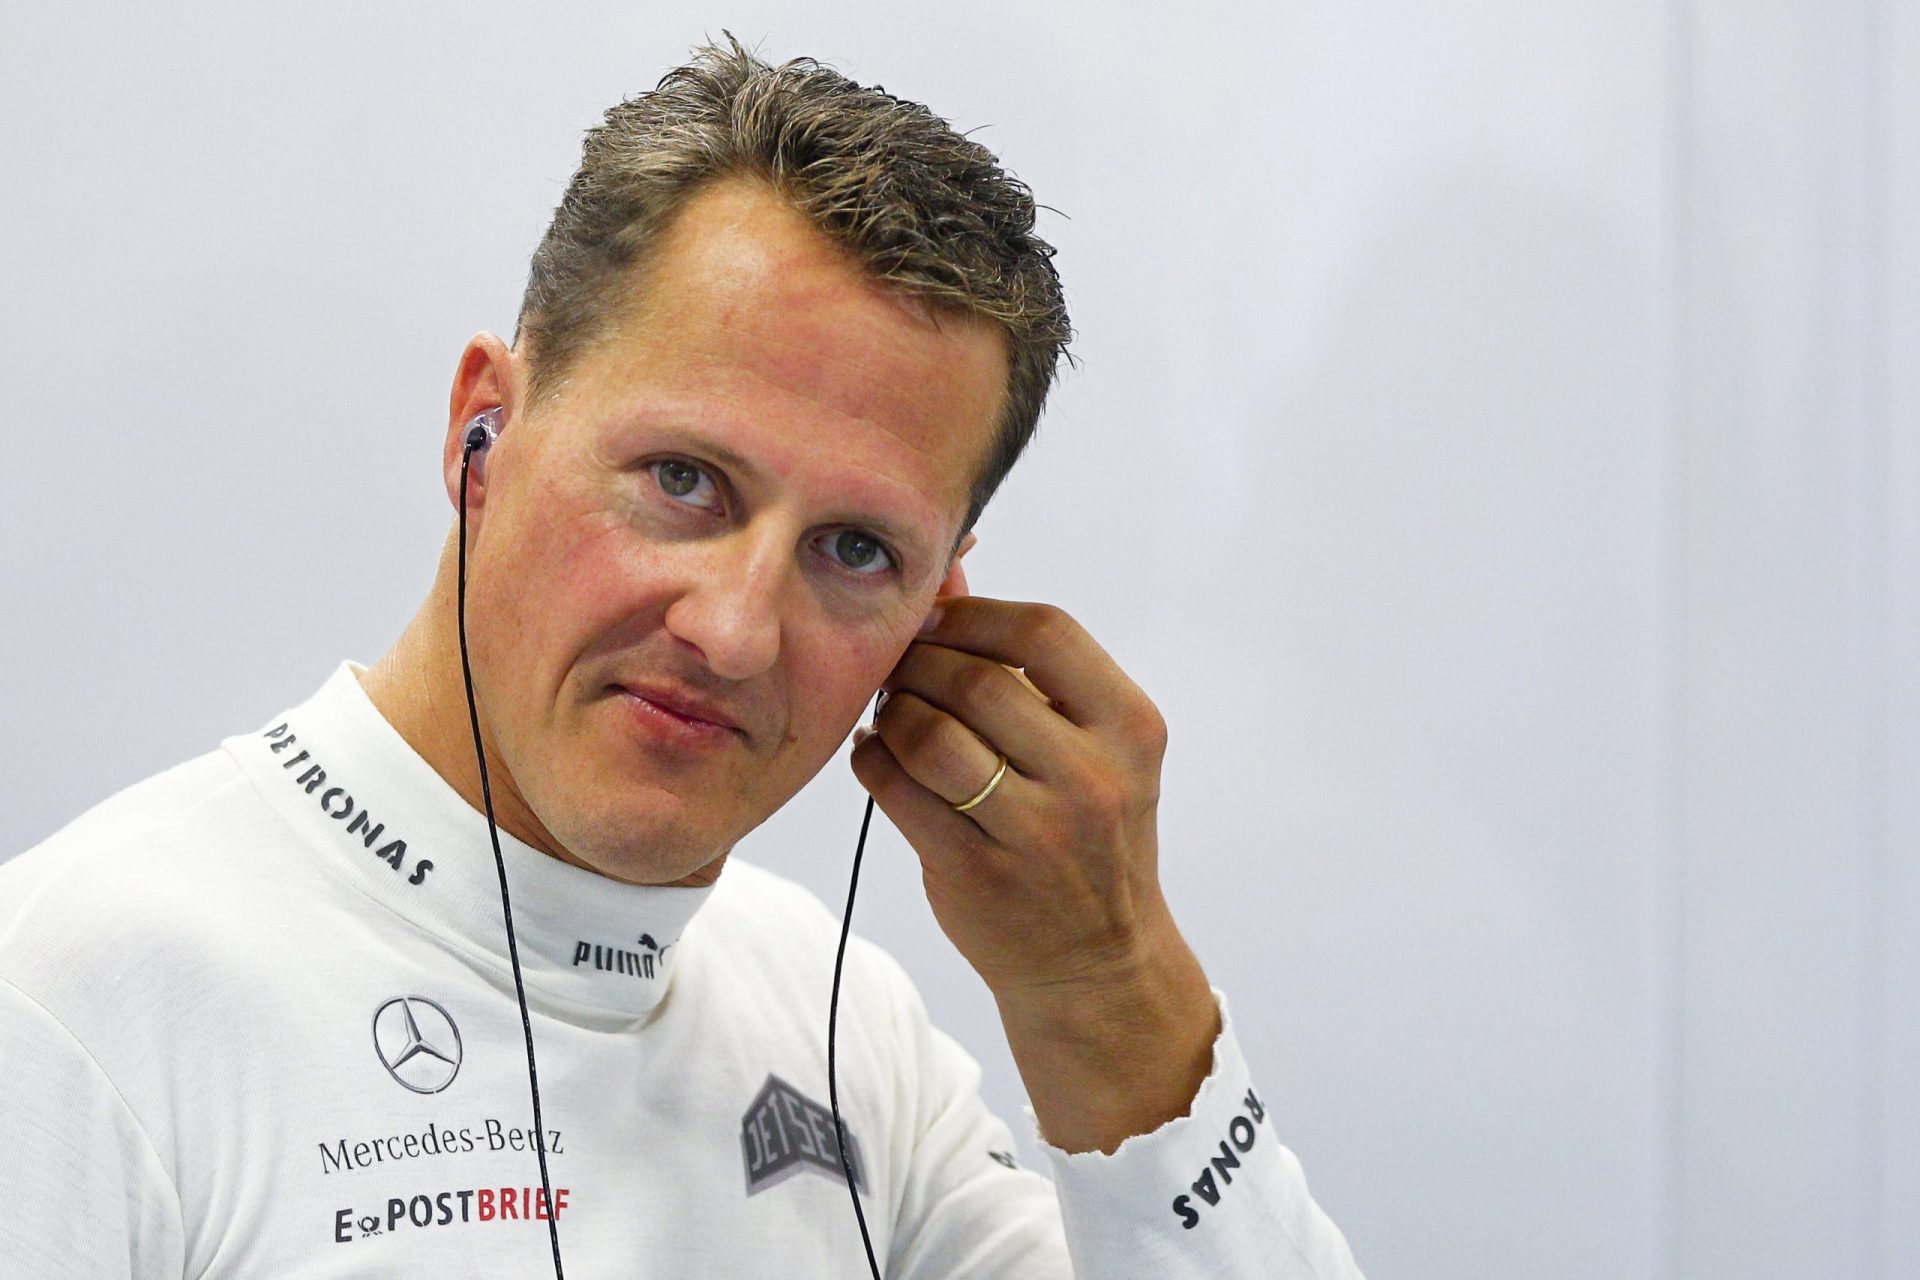 Ficha clínica de Schumacher foi roubada e está à venda